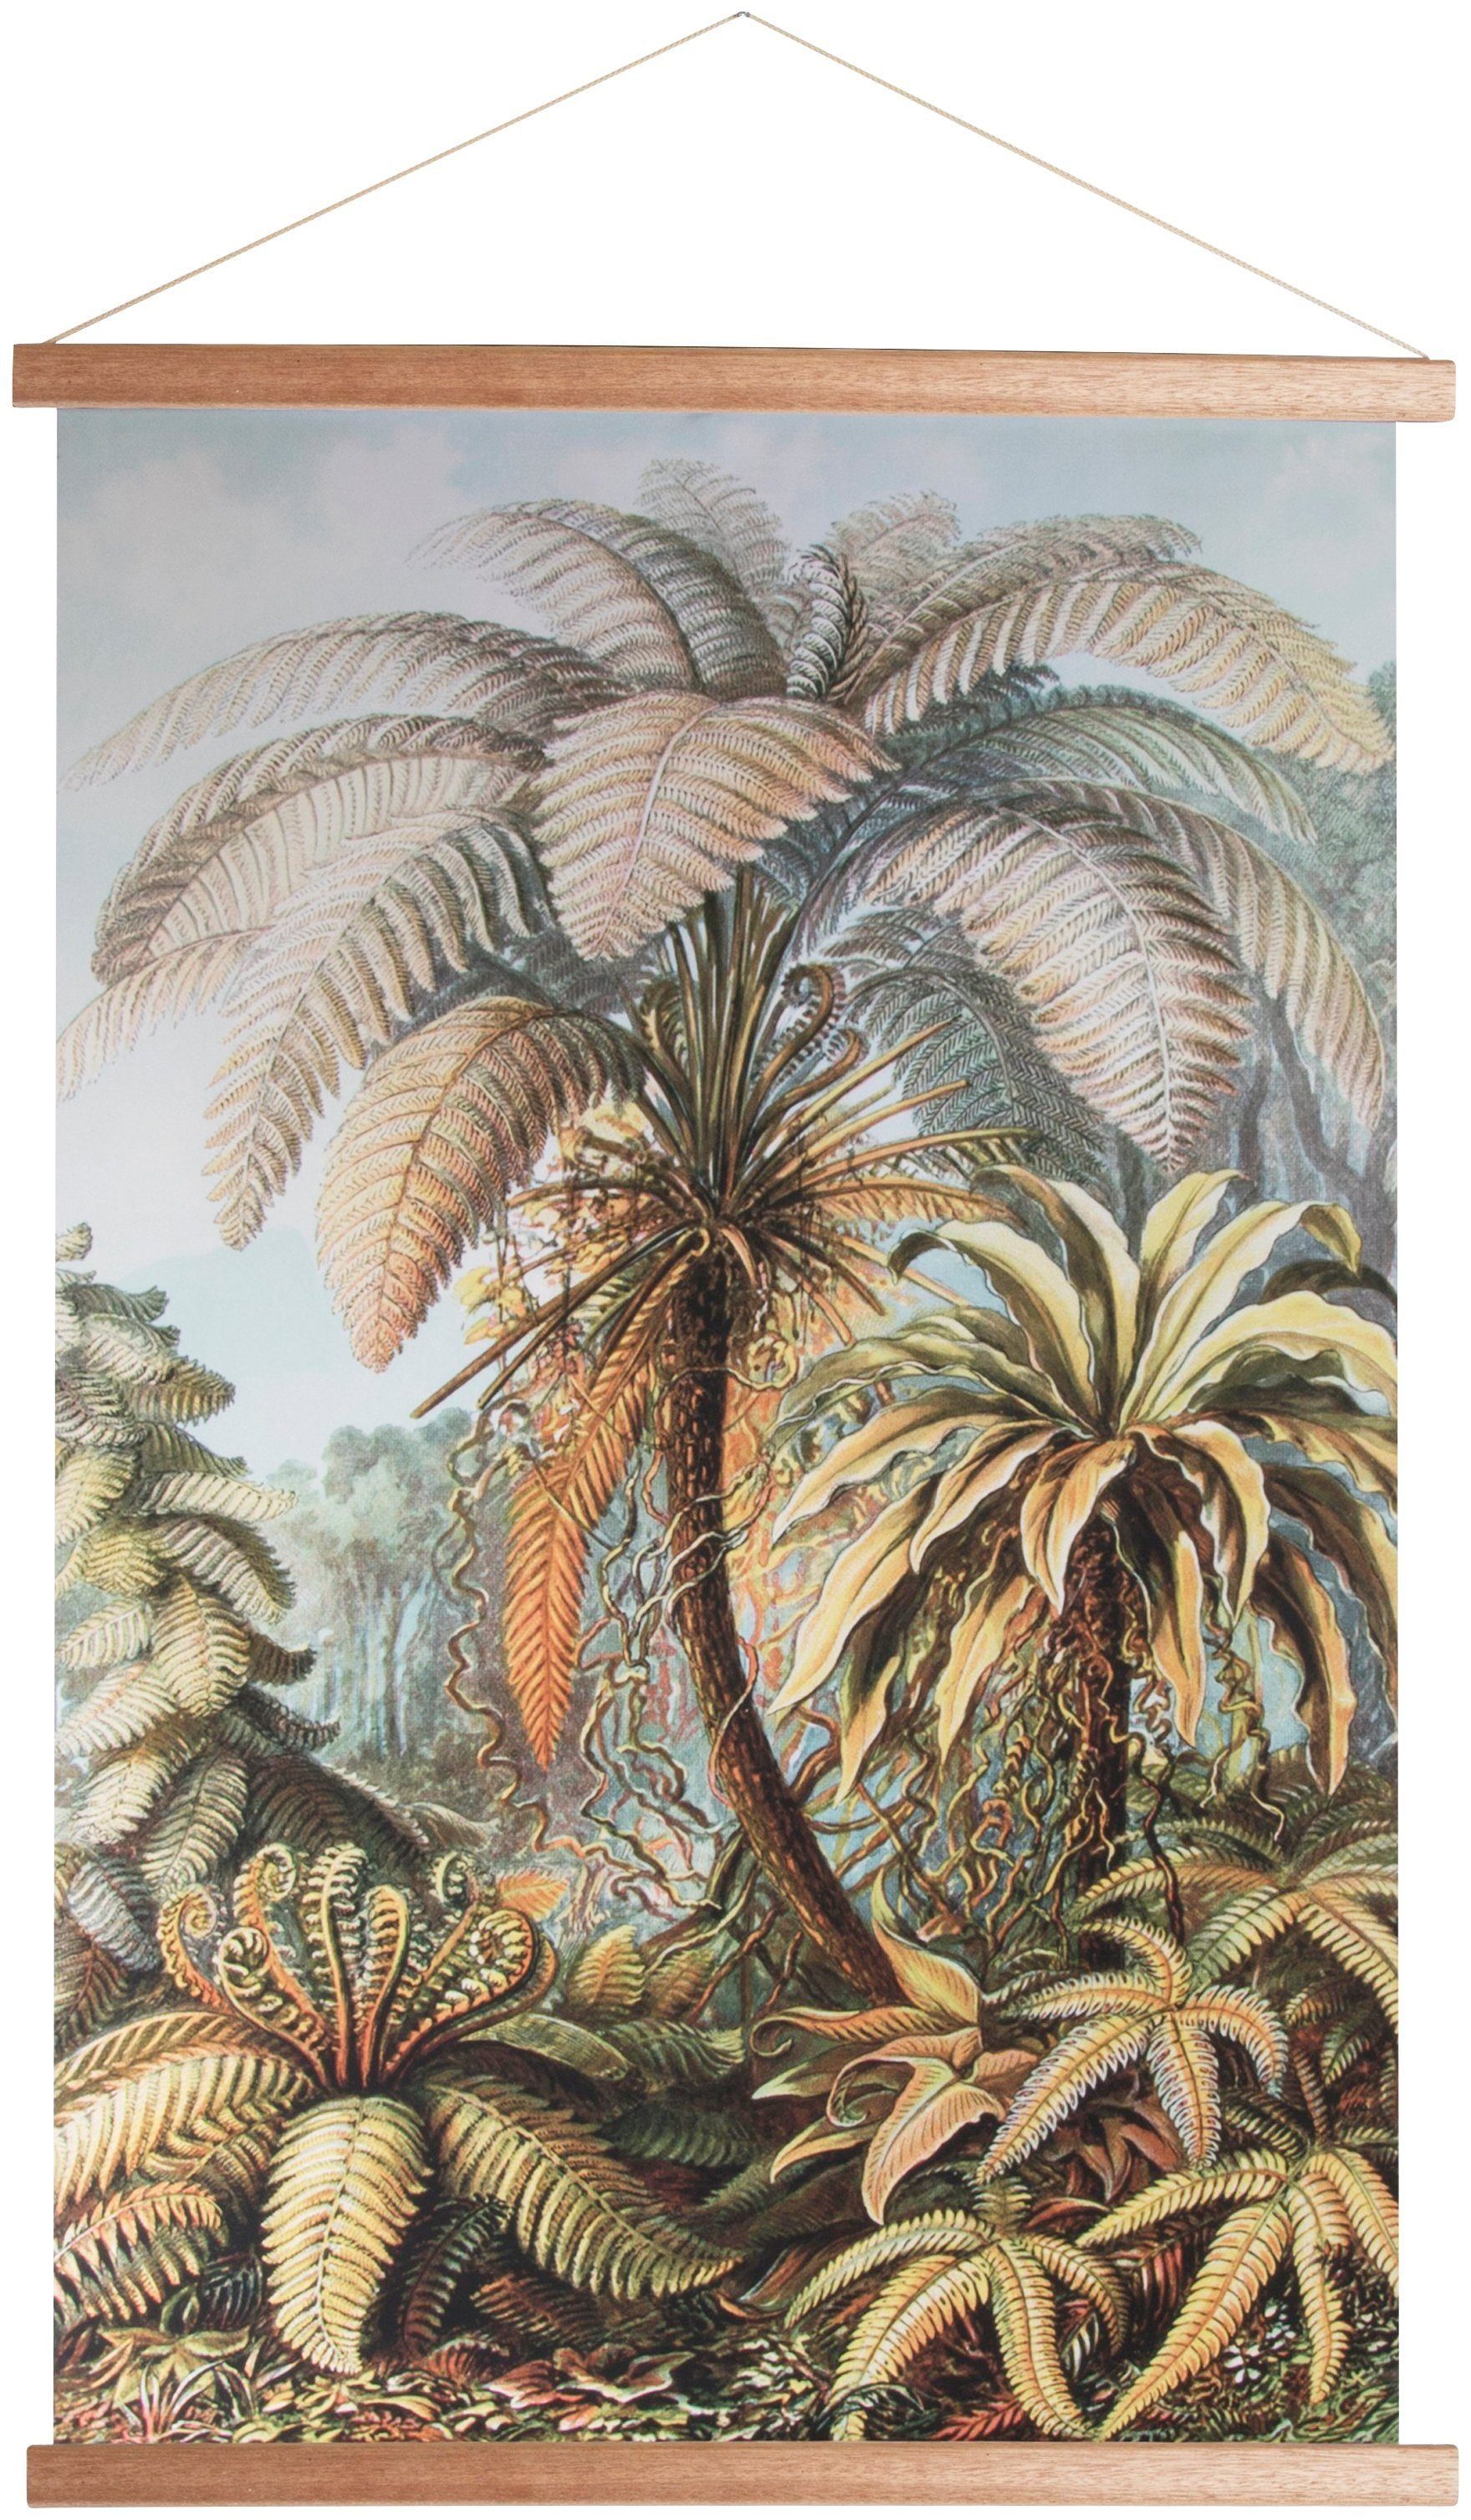 Pflanzen, the Dschungel, home Poster Art for 100x70cm, Poster, Bild, Wandbild, Wandposter